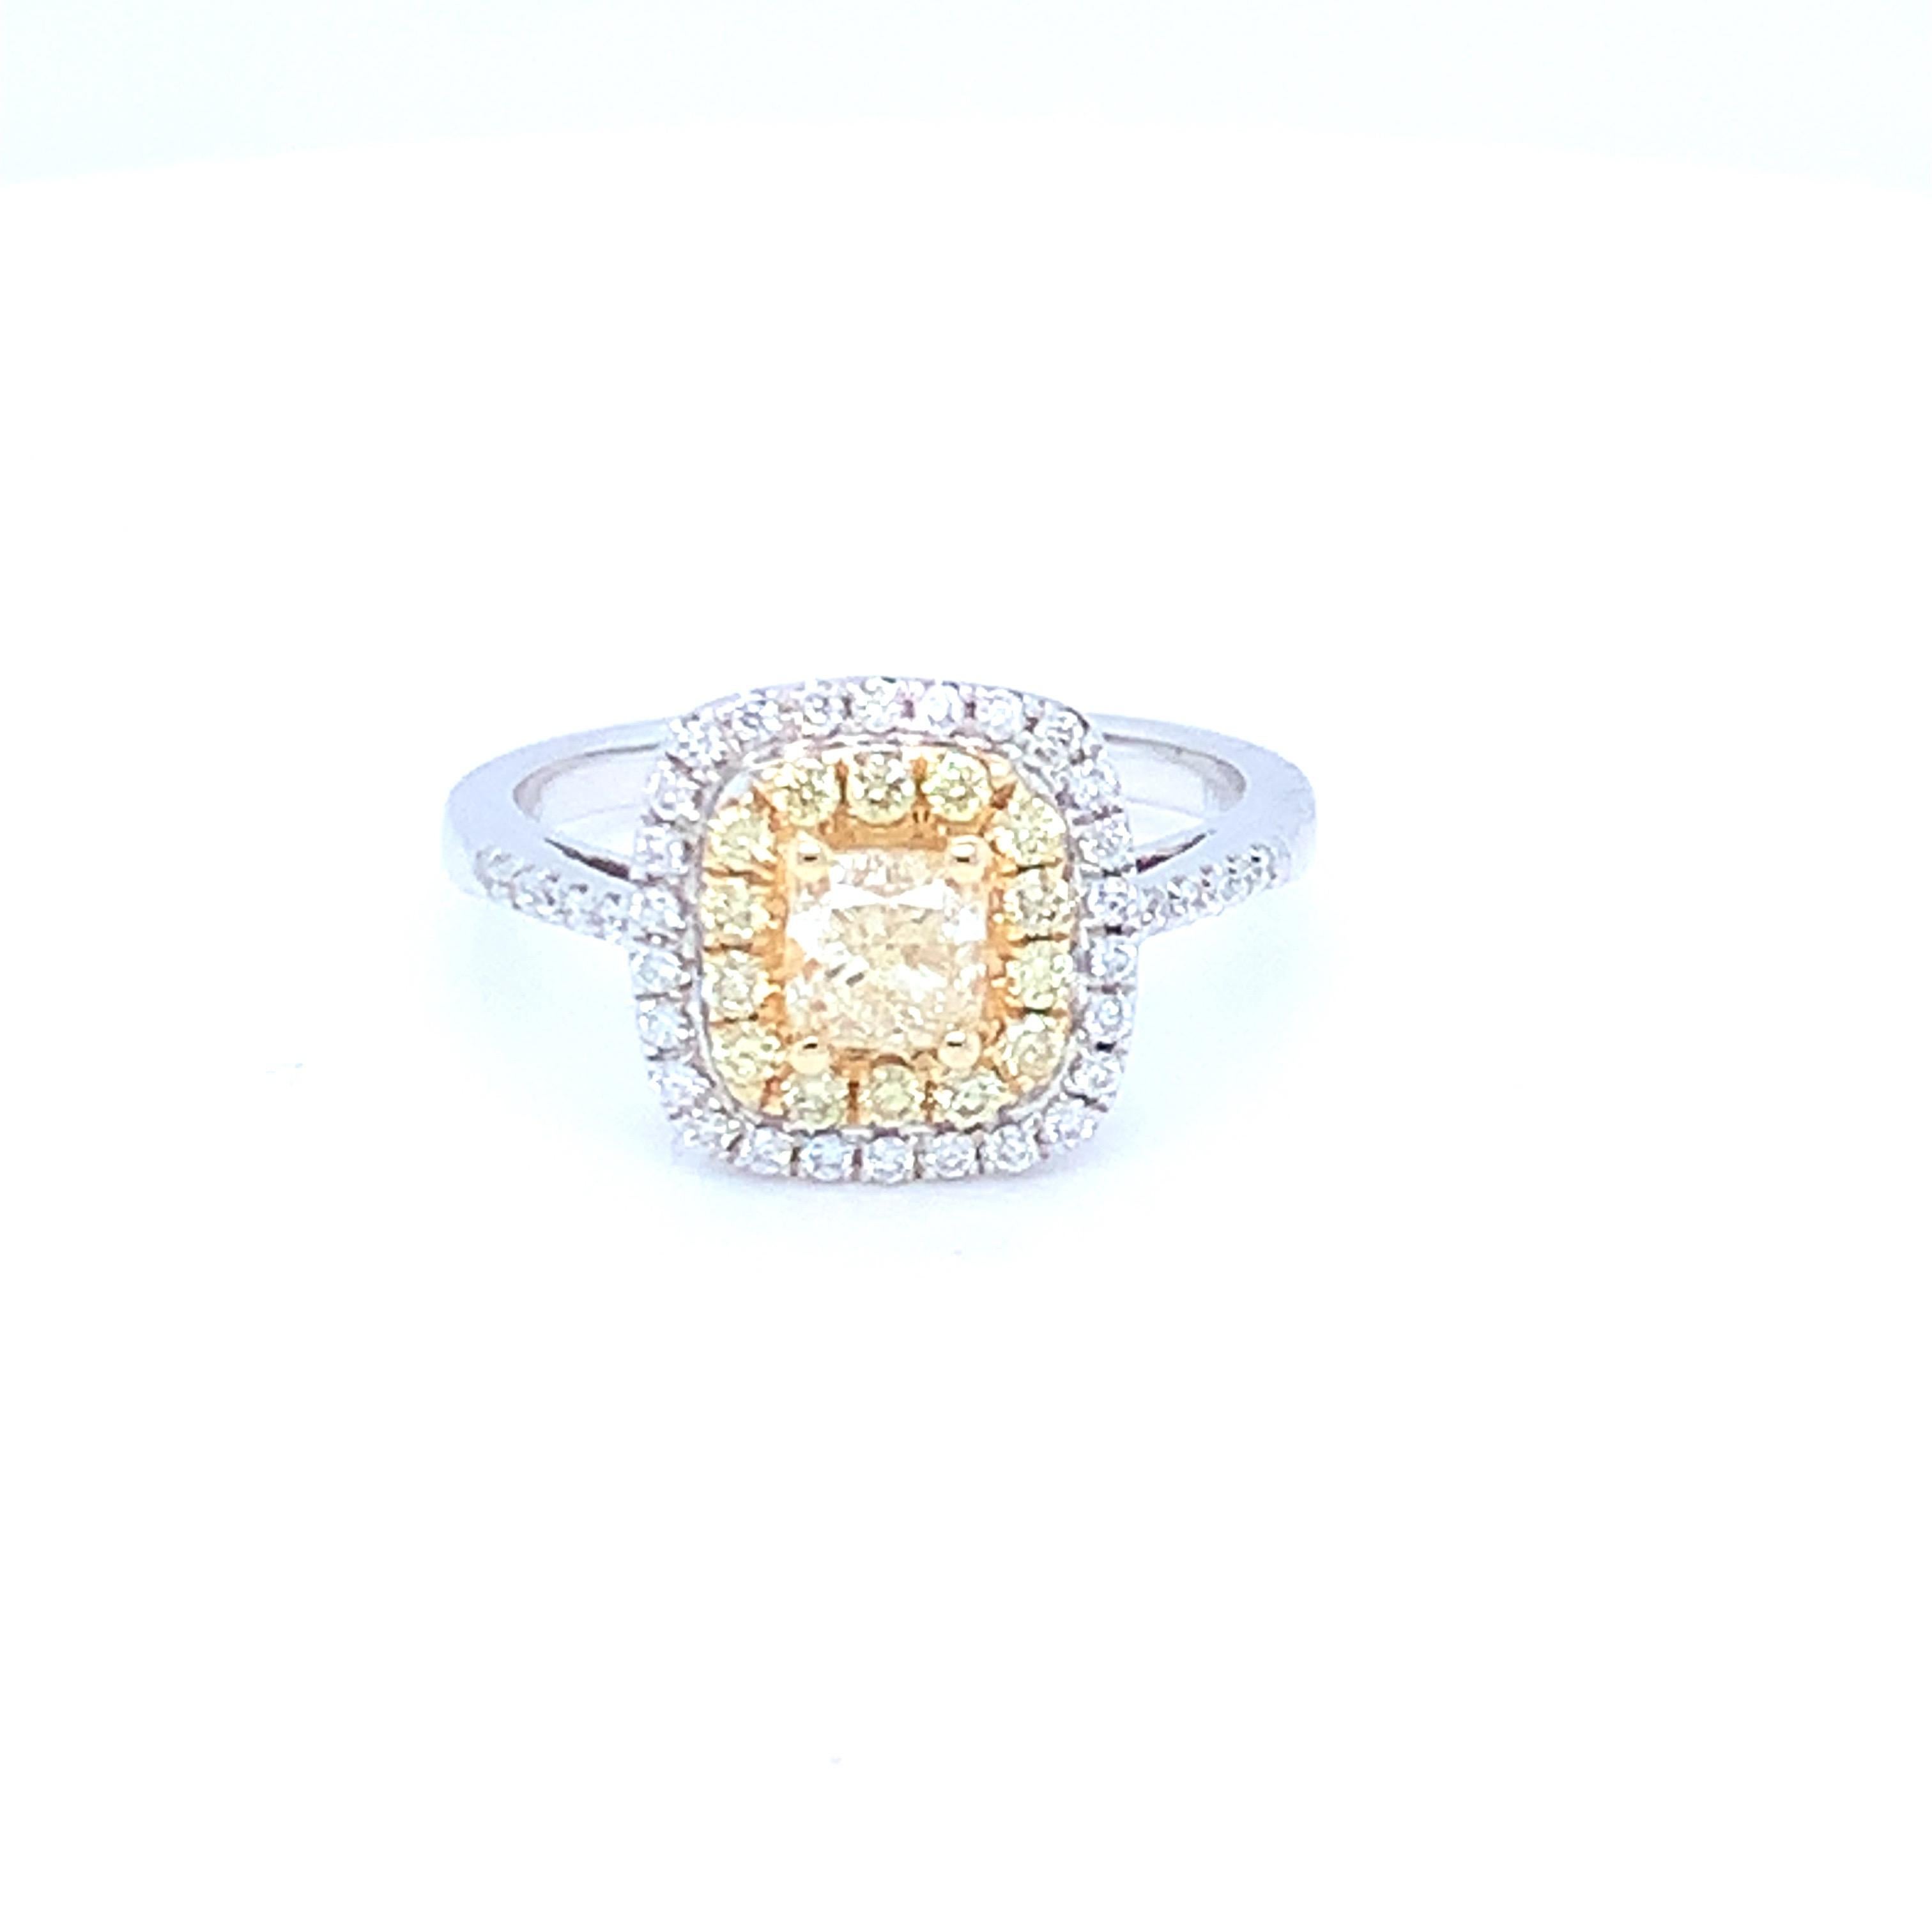 Cette jolie bague présente un halo de diamants jaunes et blancs. Serti en or bicolore pour s'harmoniser avec les diamants bicolores. Cette pièce a été fabriquée à la main pour obtenir la meilleure qualité possible. 
Diamant jaune central :